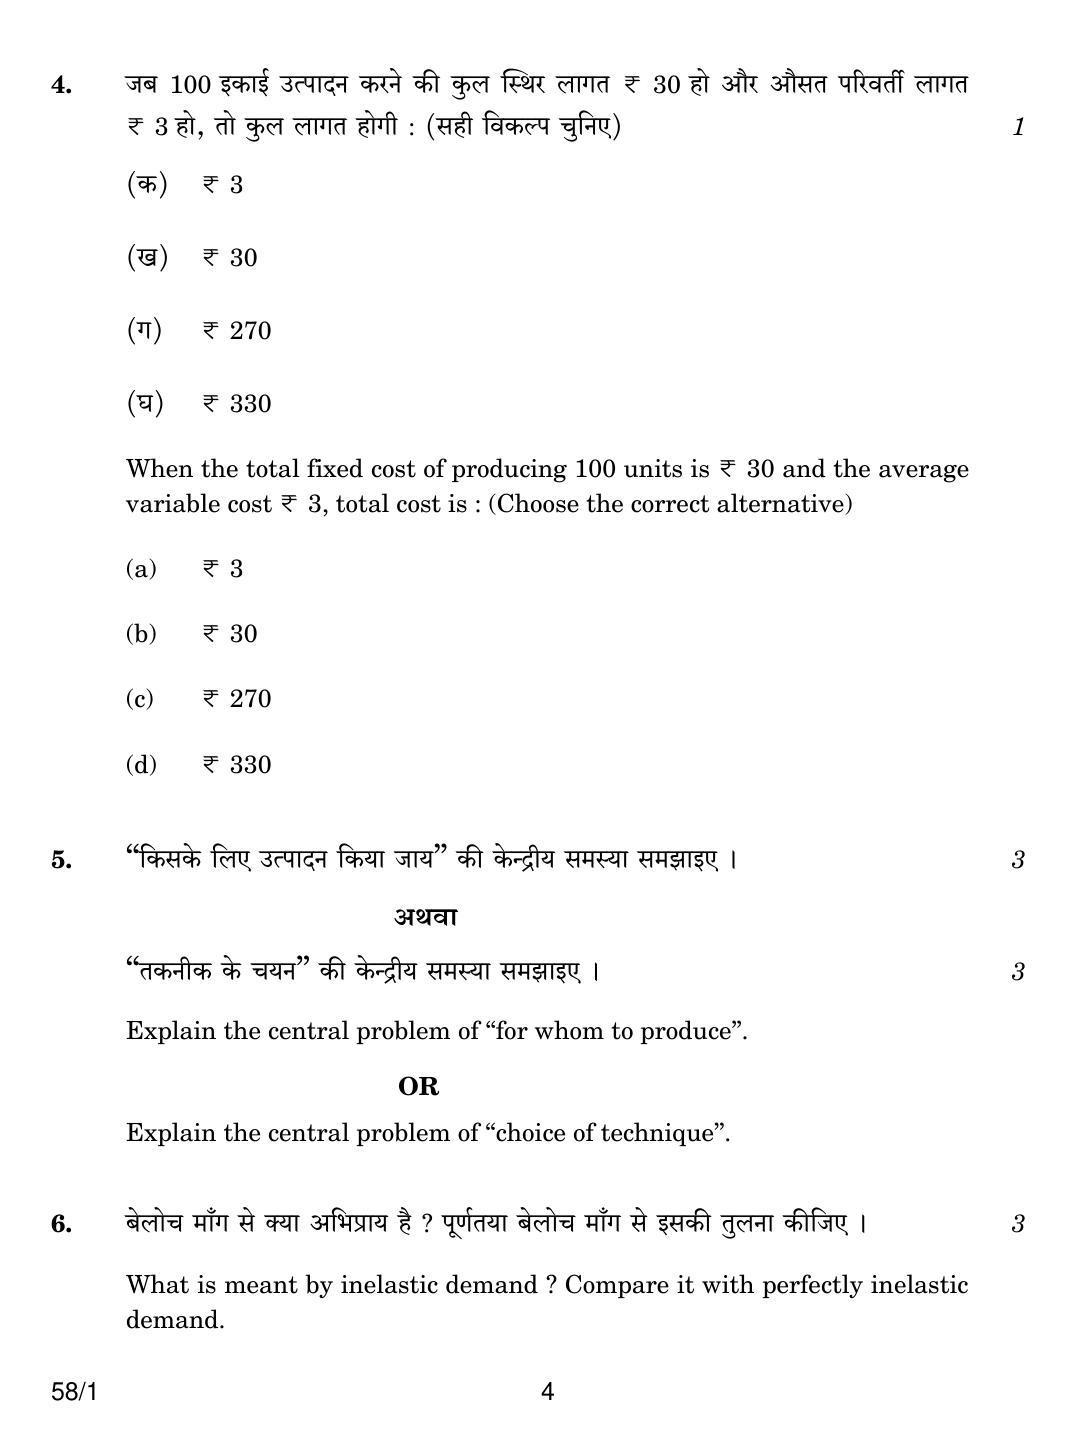 CBSE Class 12 58-1 ECONOMICS 2018 Question Paper - Page 4